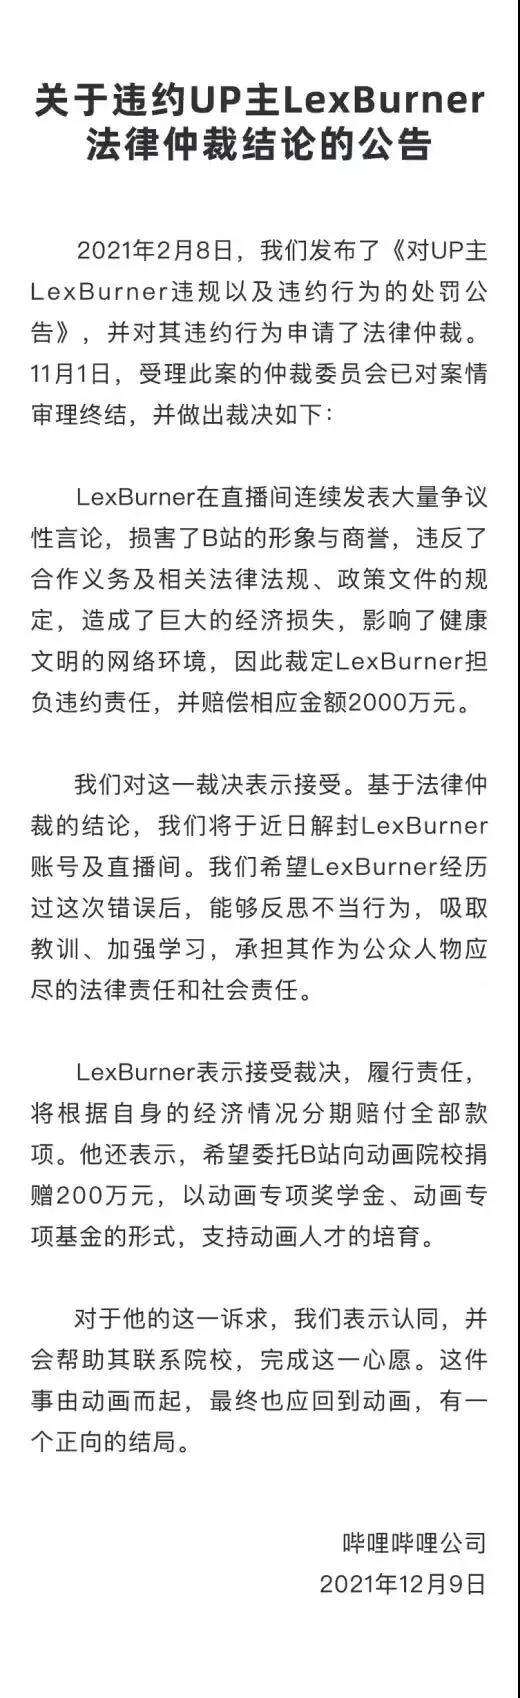 UP主LexBurner将分期付款、赔偿B站2000万元，直播间近期将解封